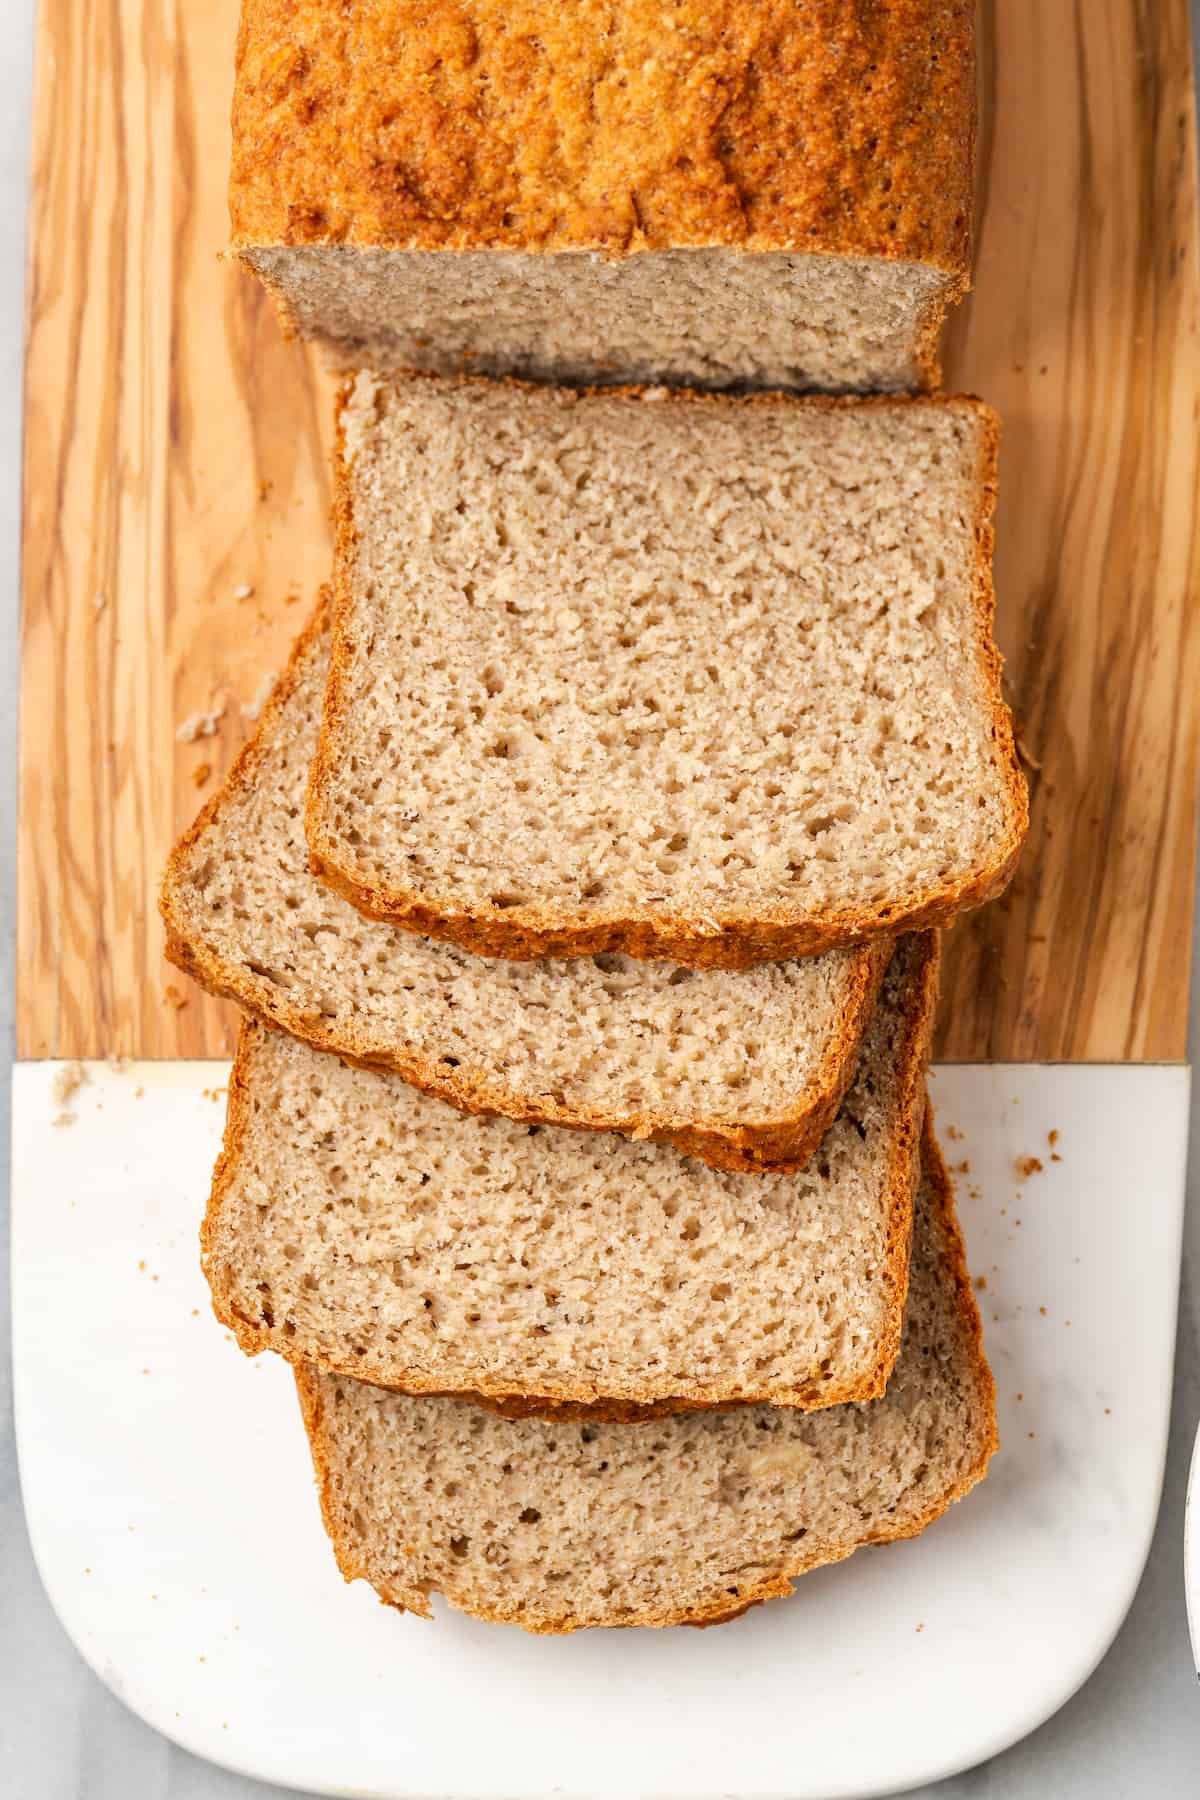 Overhead view of sliced gluten-free sandwich bread on cutting board